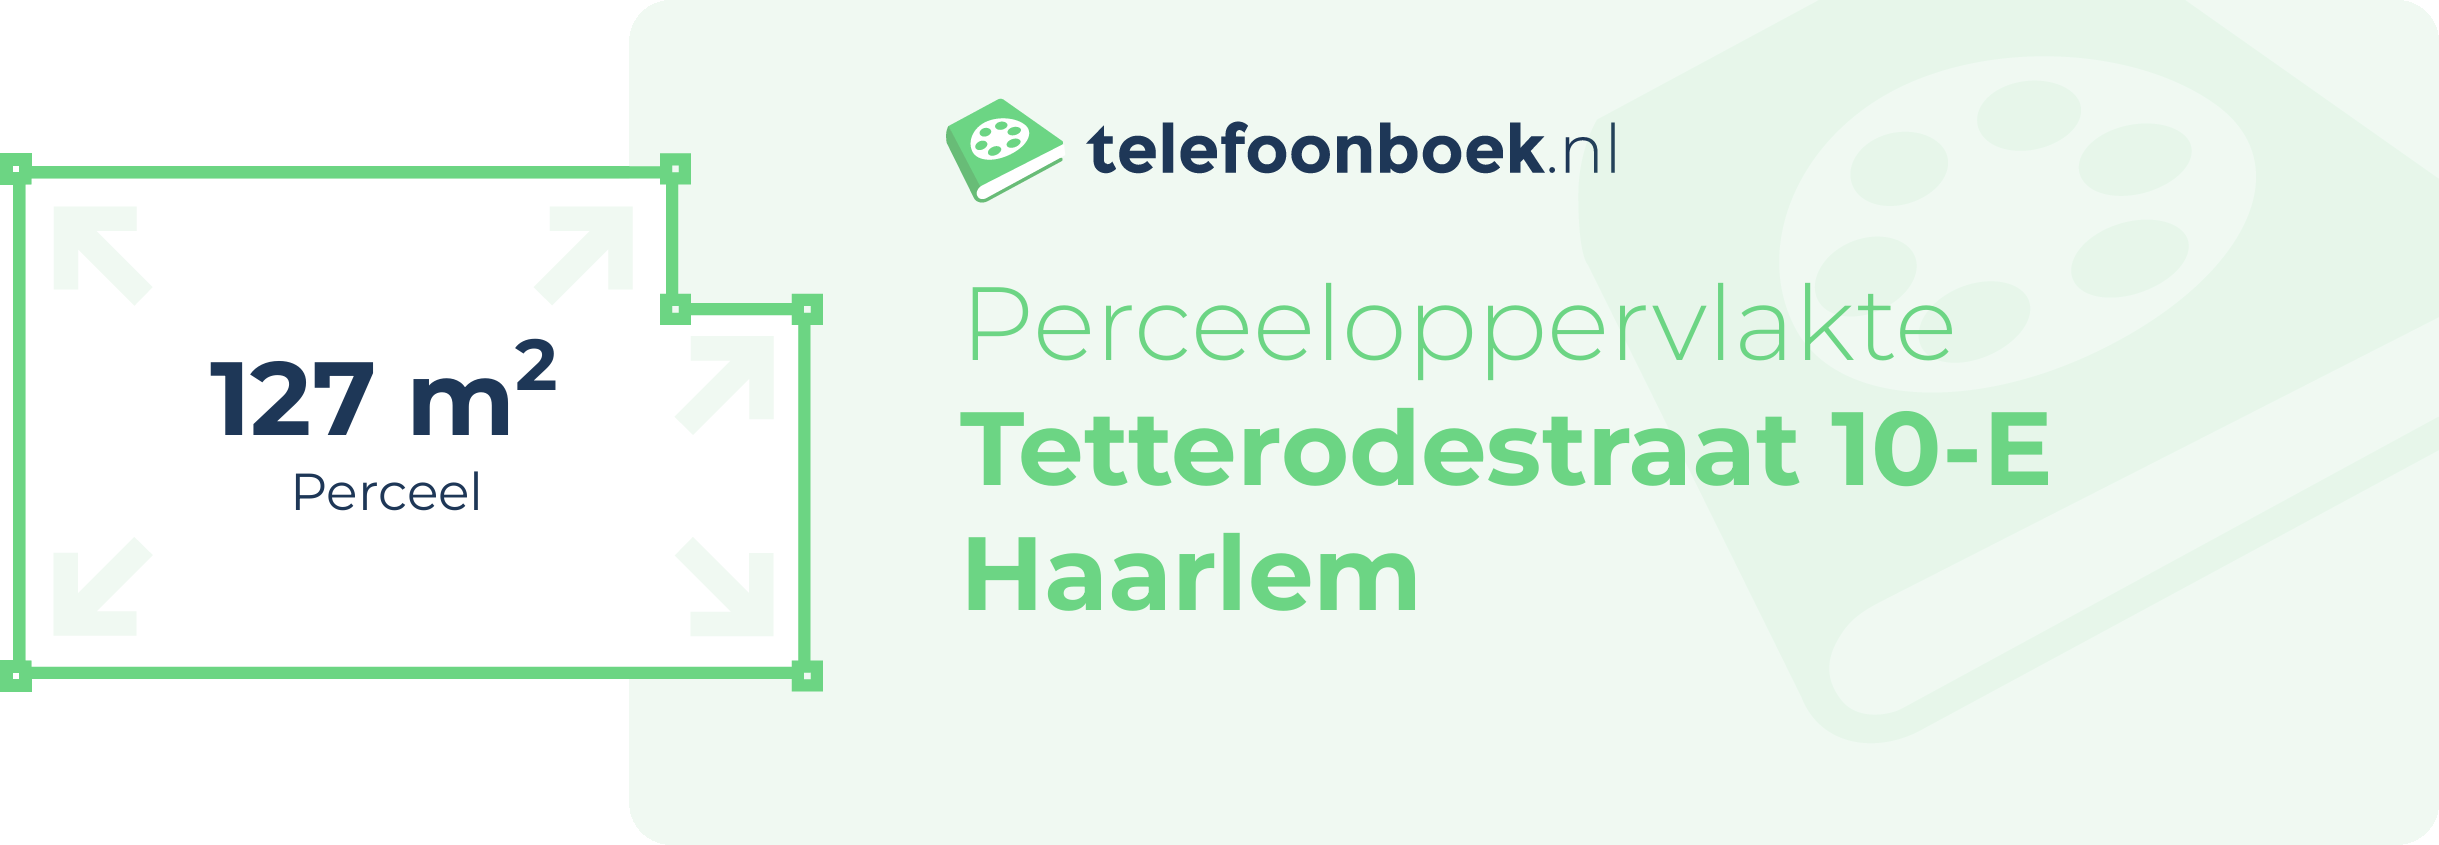 Perceeloppervlakte Tetterodestraat 10-E Haarlem